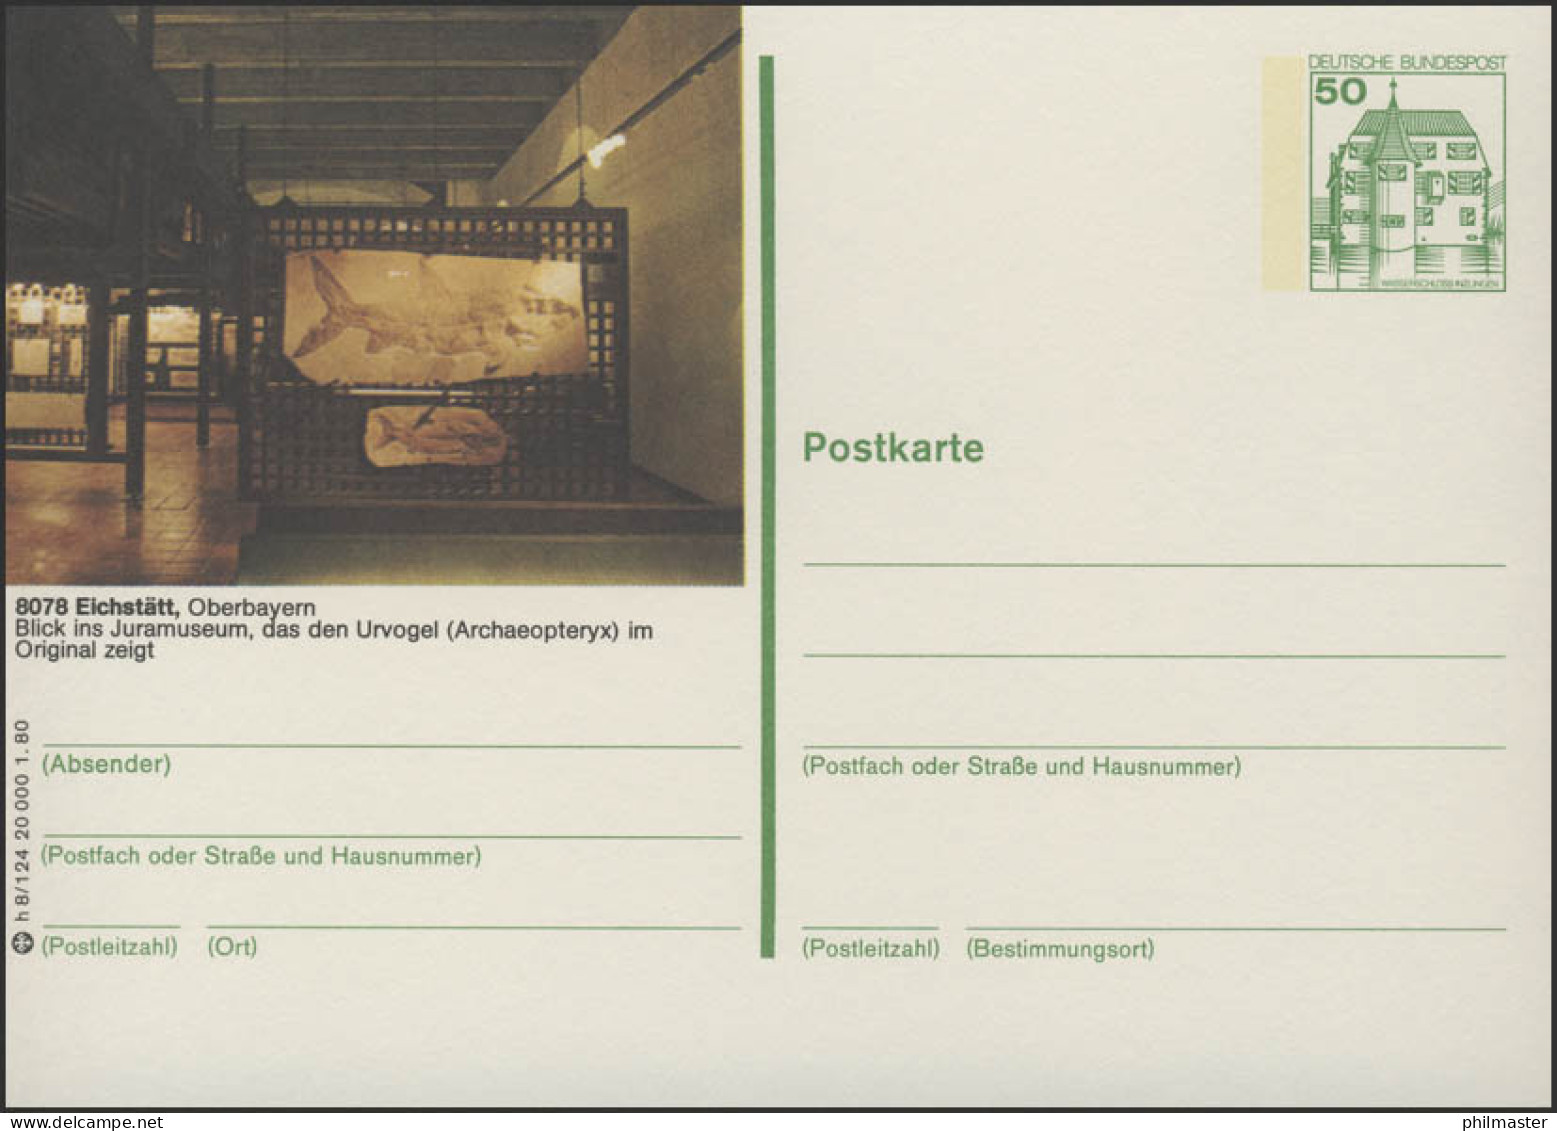 P130-h8/124 - 8078 Eichstädt, Jura-Museum ** - Cartes Postales Illustrées - Neuves